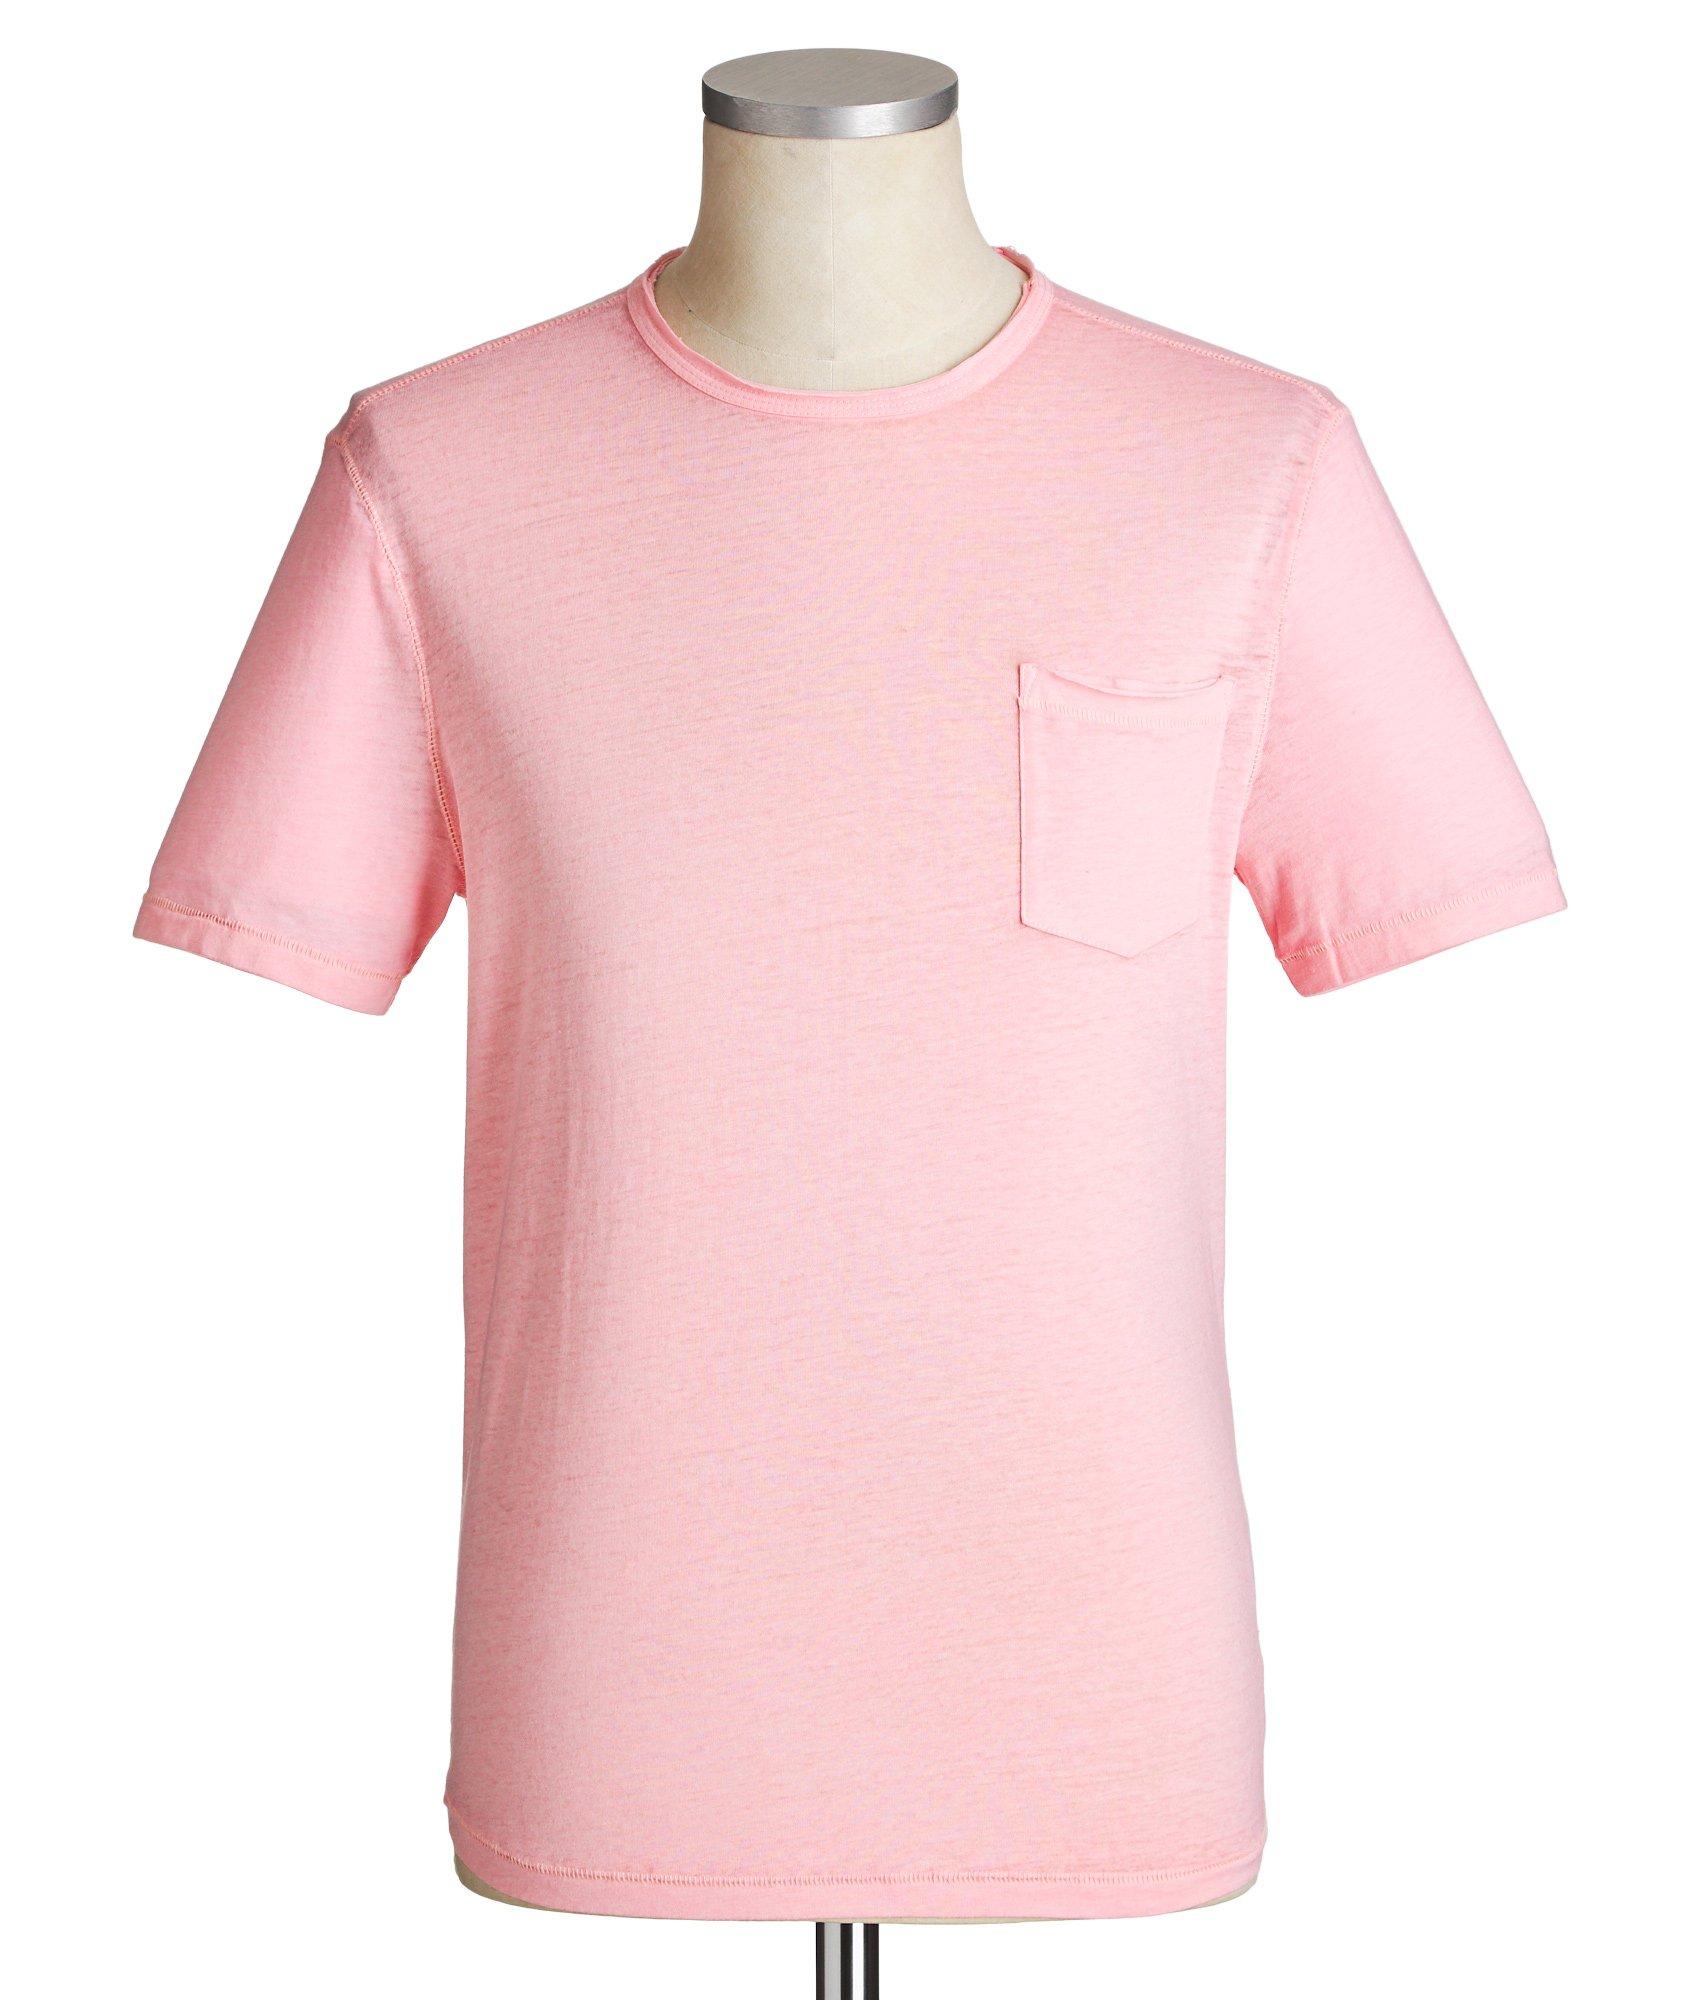 Cotton-Blend Burnout T-Shirt image 0